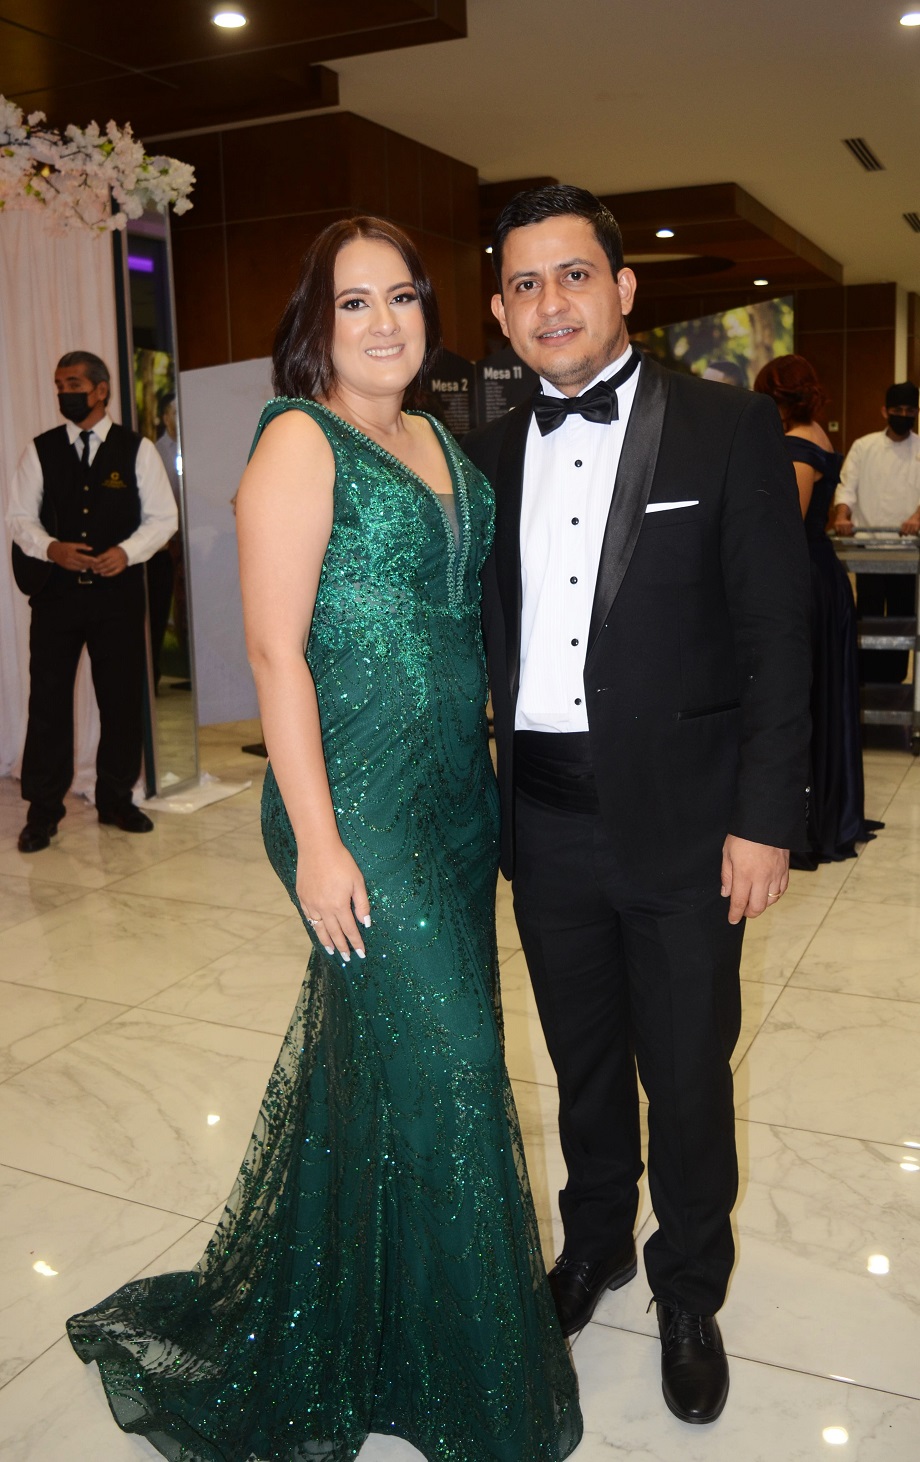 La boda de Joseline Milla y Alejandro Muñoz: un enlace con estilo y personalidad